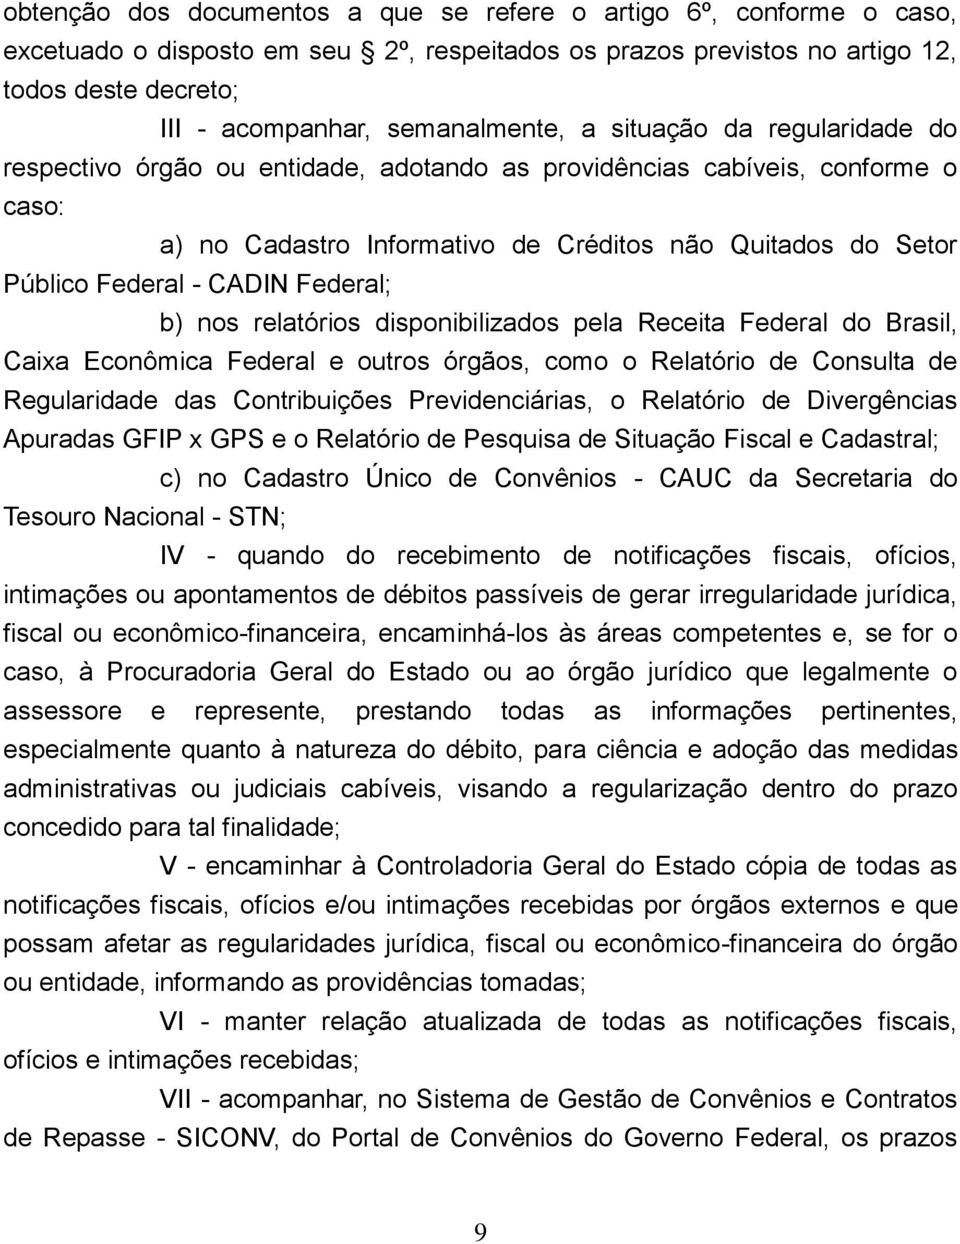 Federal - CADIN Federal; b) nos relatórios disponibilizados pela Receita Federal do Brasil, Caixa Econômica Federal e outros órgãos, como o Relatório de Consulta de Regularidade das Contribuições